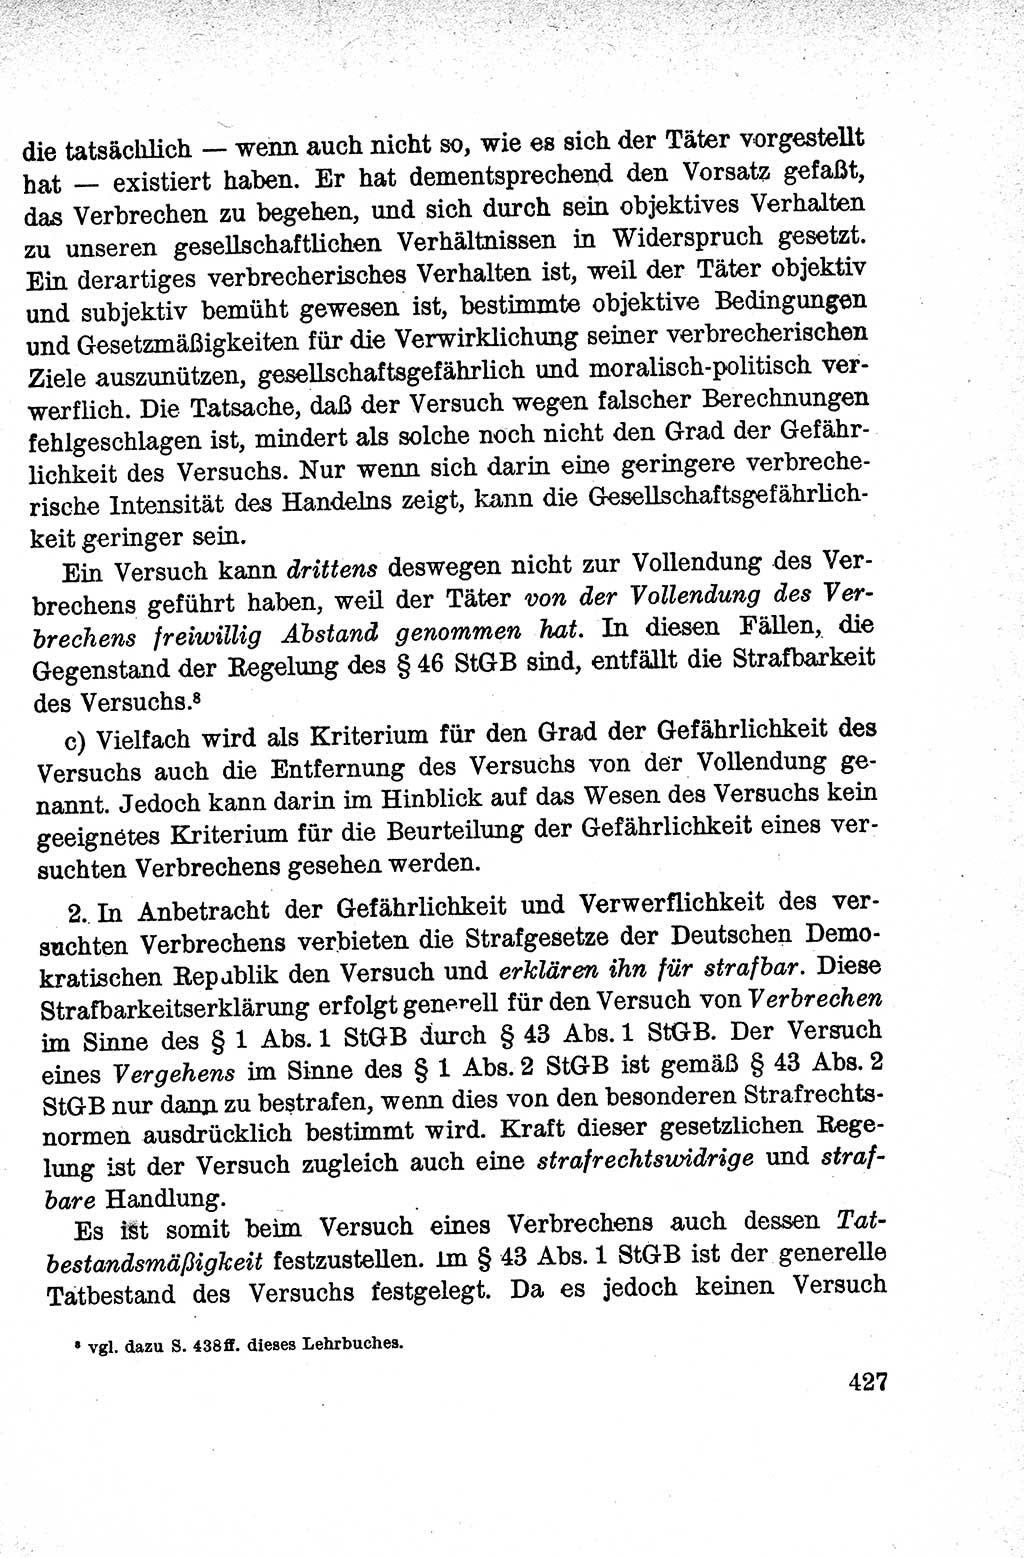 Lehrbuch des Strafrechts der Deutschen Demokratischen Republik (DDR), Allgemeiner Teil 1959, Seite 427 (Lb. Strafr. DDR AT 1959, S. 427)